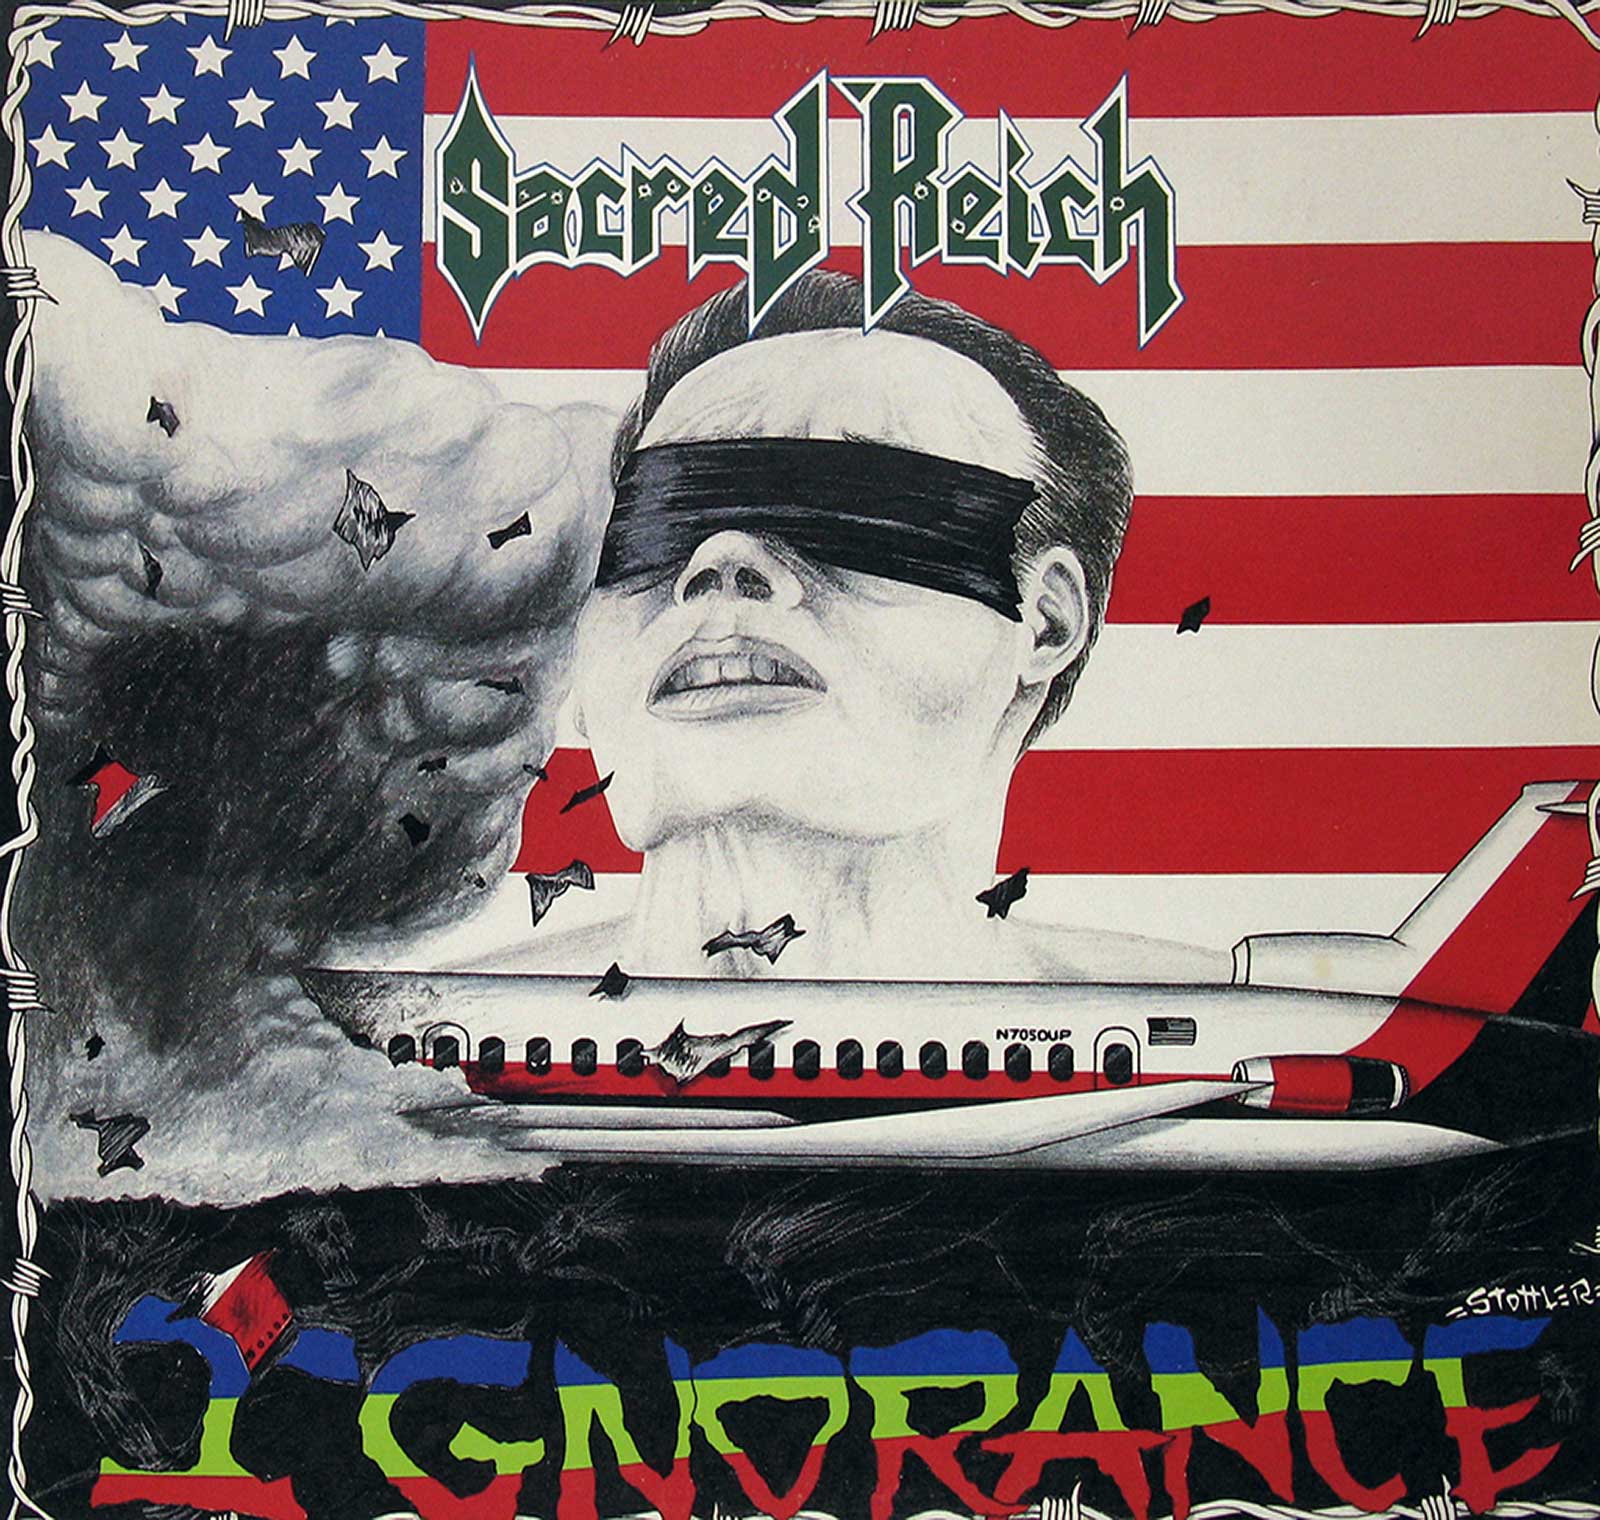 large album front cover photo of: SACRED REICH IGNORANCE 12" VINYL LP ALBUM 